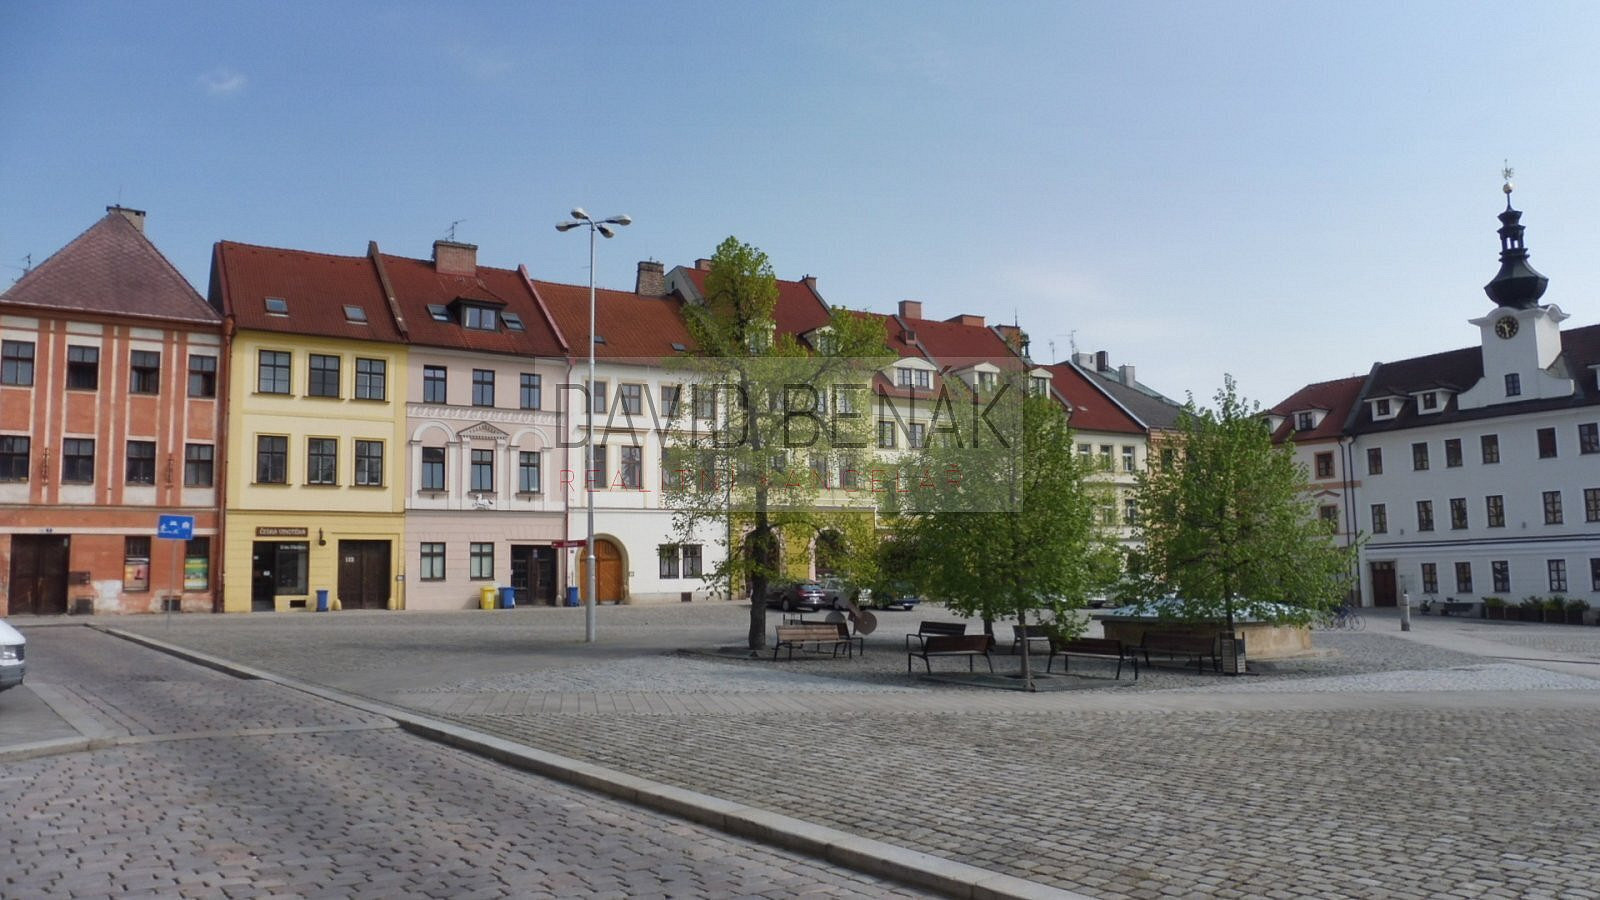 Malé náměstí, Hradec Králové